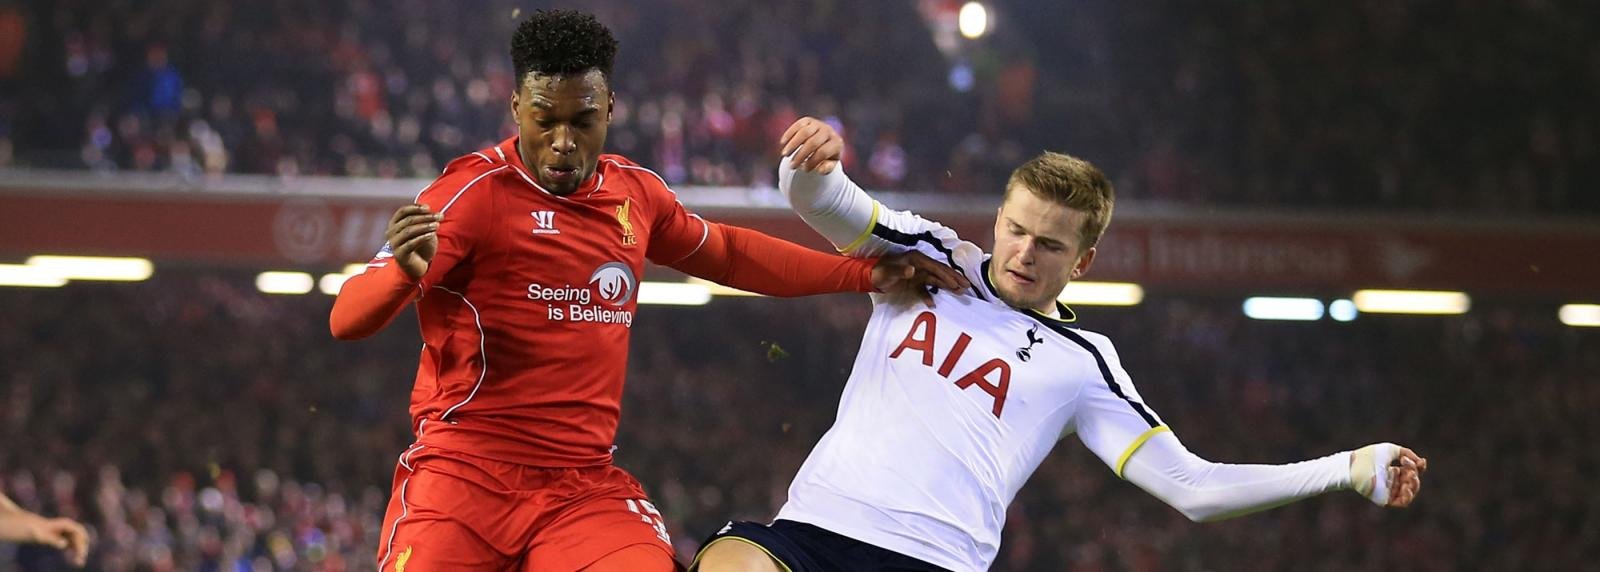 Tottenham vs Liverpool Combined XI: Kane or Sturridge?